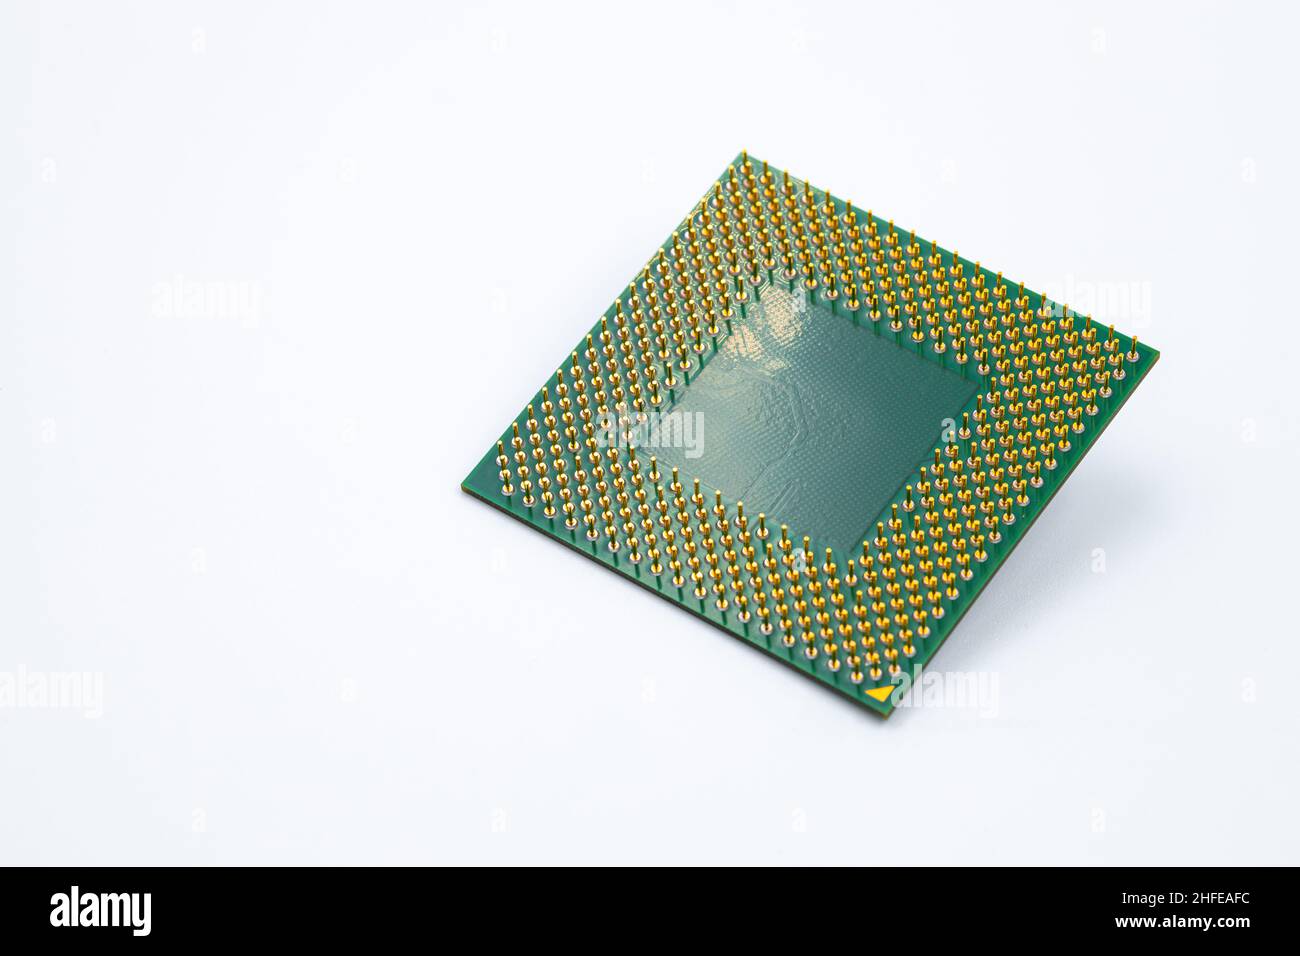 Lato posteriore del chip del processore della CPU del personal computer isolato su sfondo bianco Foto Stock